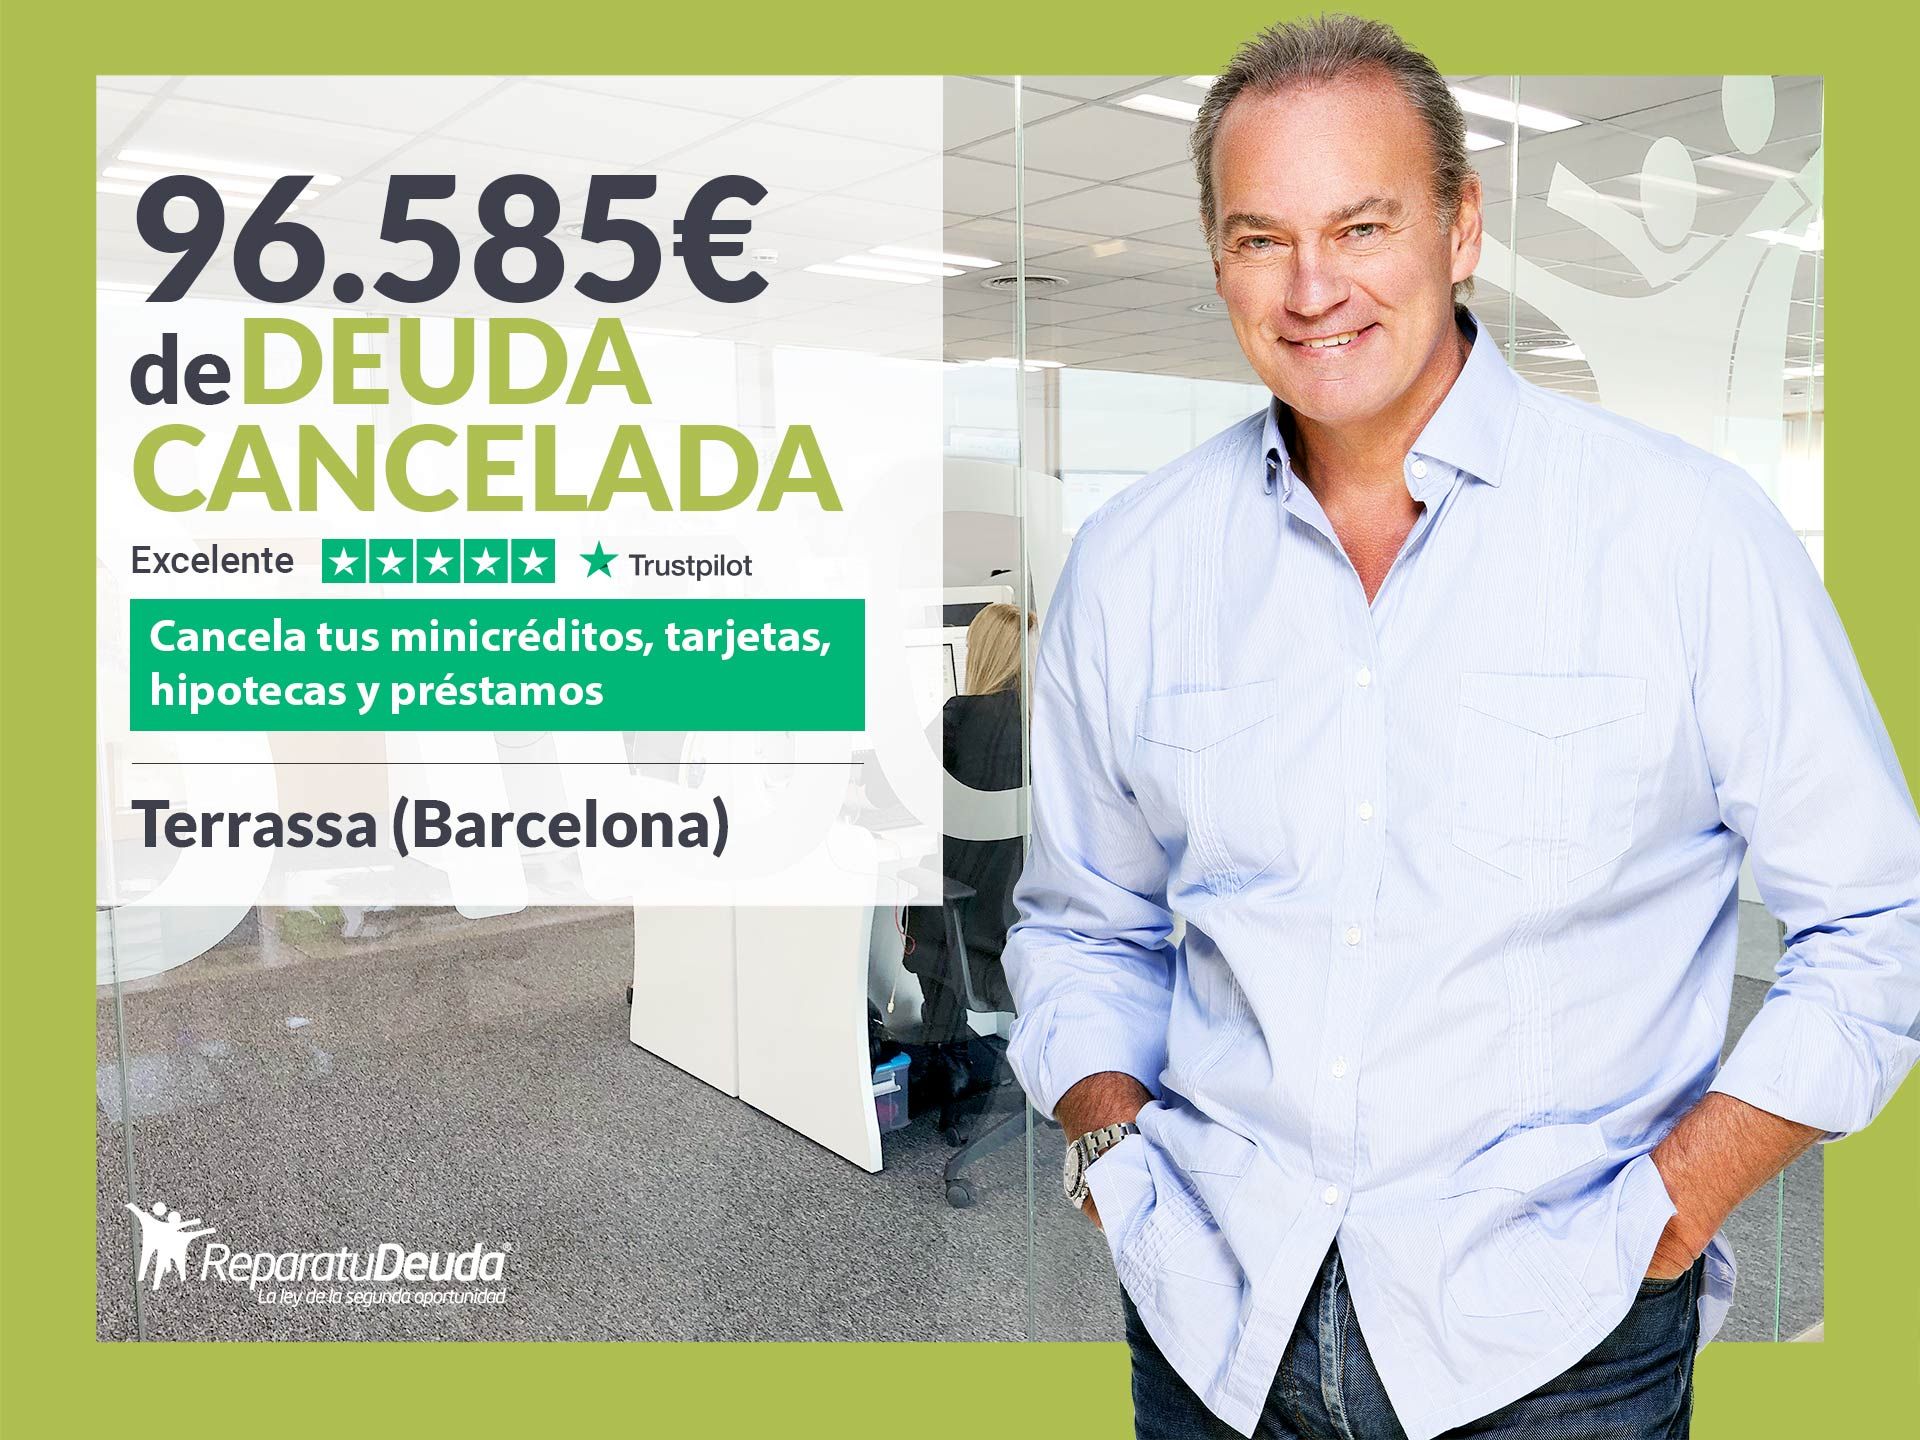 Repara tu Deuda Abogados cancela 96.585? en Terrassa (Barcelona) con la Ley de la Segunda Oportunidad